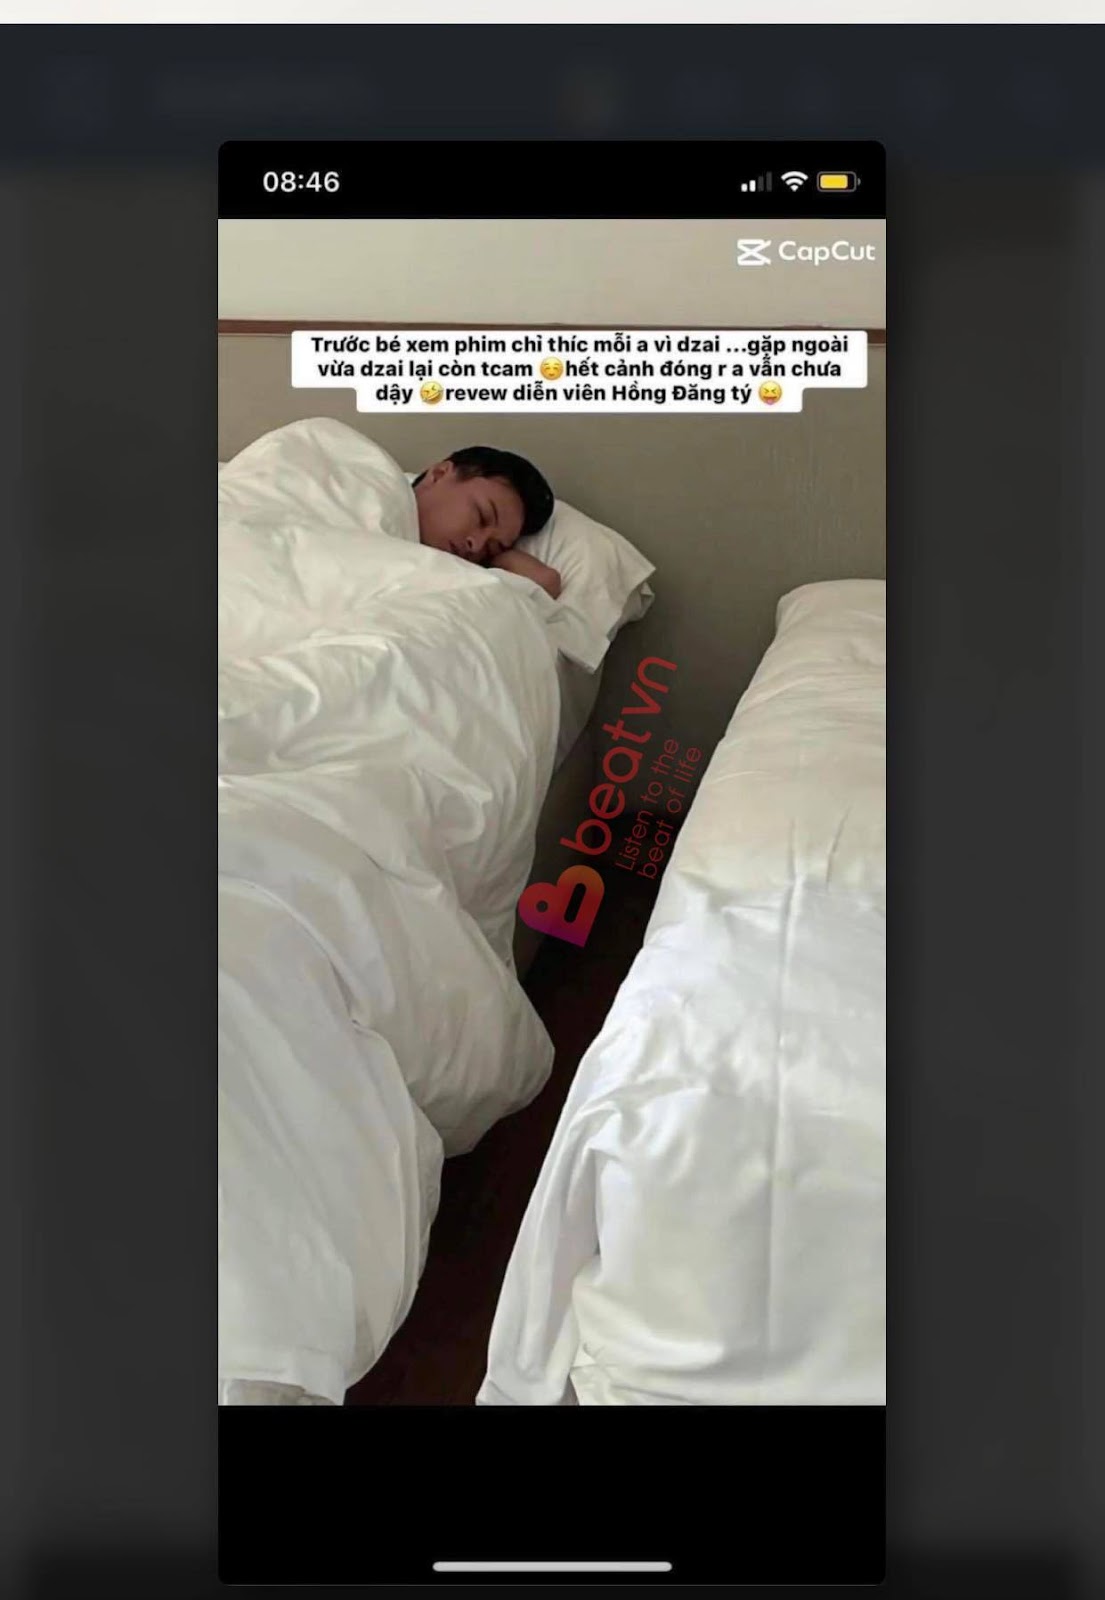 Chân dung hot girl tung ảnh giường chiếu với Hồng Đăng: Mặc đồ hết nước chấm, thích đạo lý - Hình 2